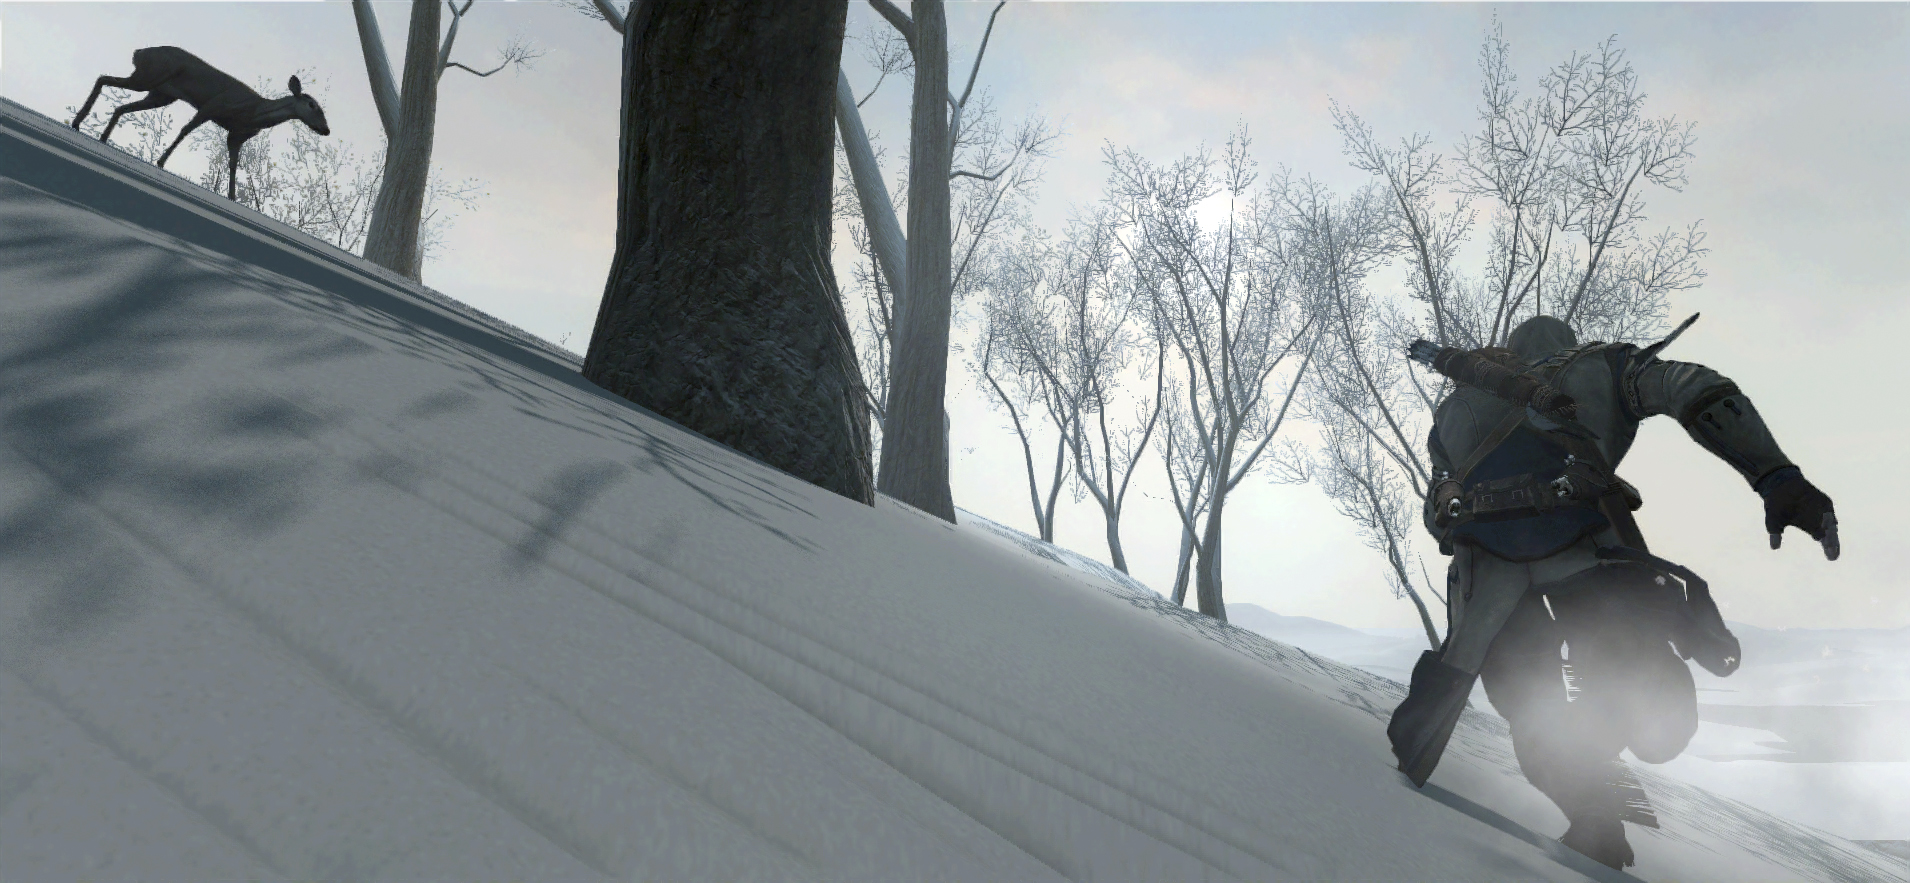 Immagine pubblicata in relazione al seguente contenuto: Assassin's Creed III Screenshots: Connor corre nei boschi innevati | Nome immagine: news17020_1.jpg